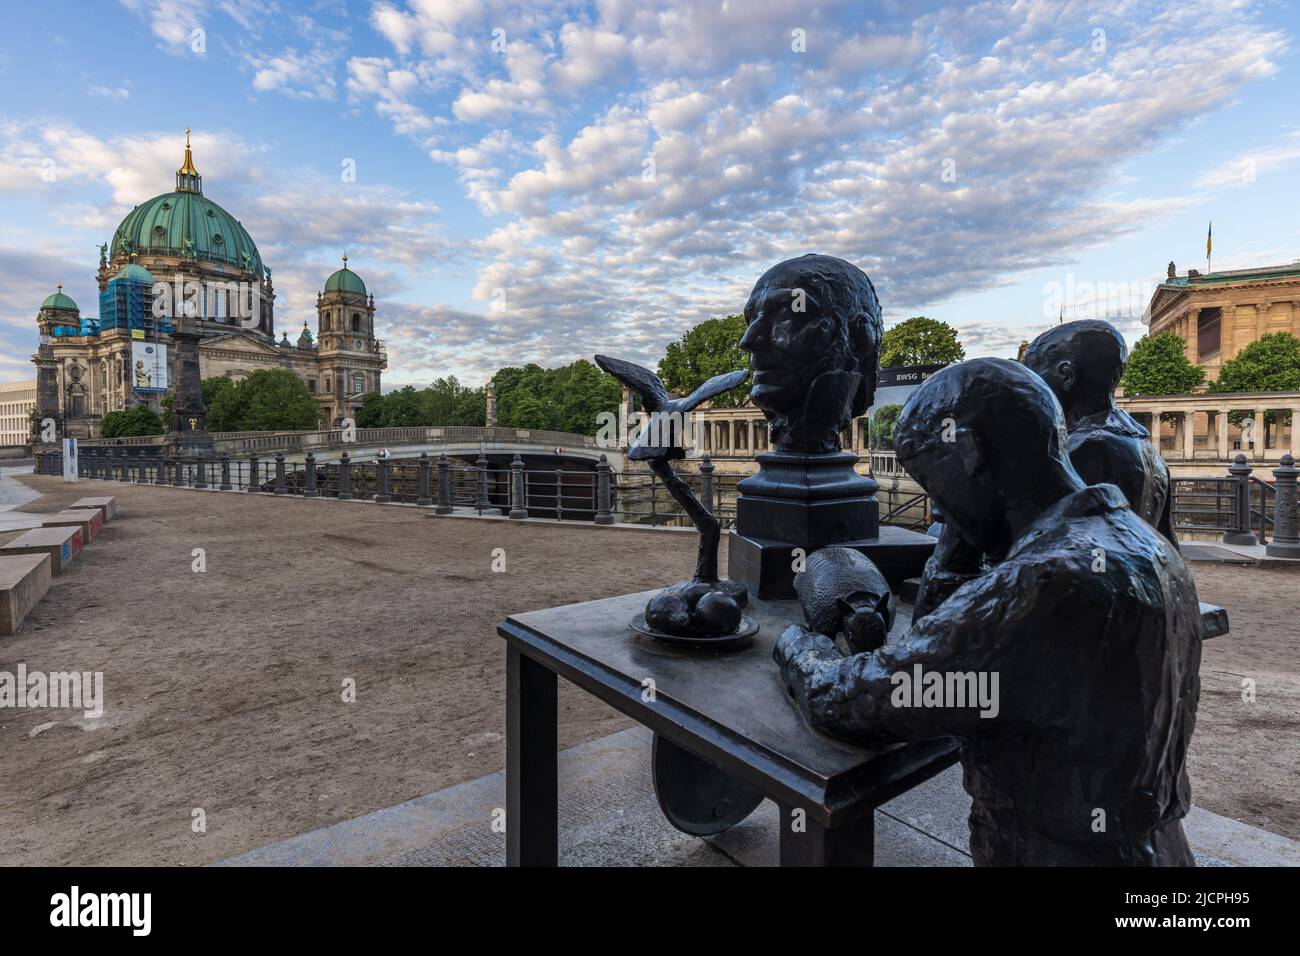 Monument situé dans le parc Monbijou, Berlin, en hommage à Friedrich Adolph Wilhelm Diesterweg, un homme politique allemand de 18th et 19th ans. Berliner Dom derrière Banque D'Images